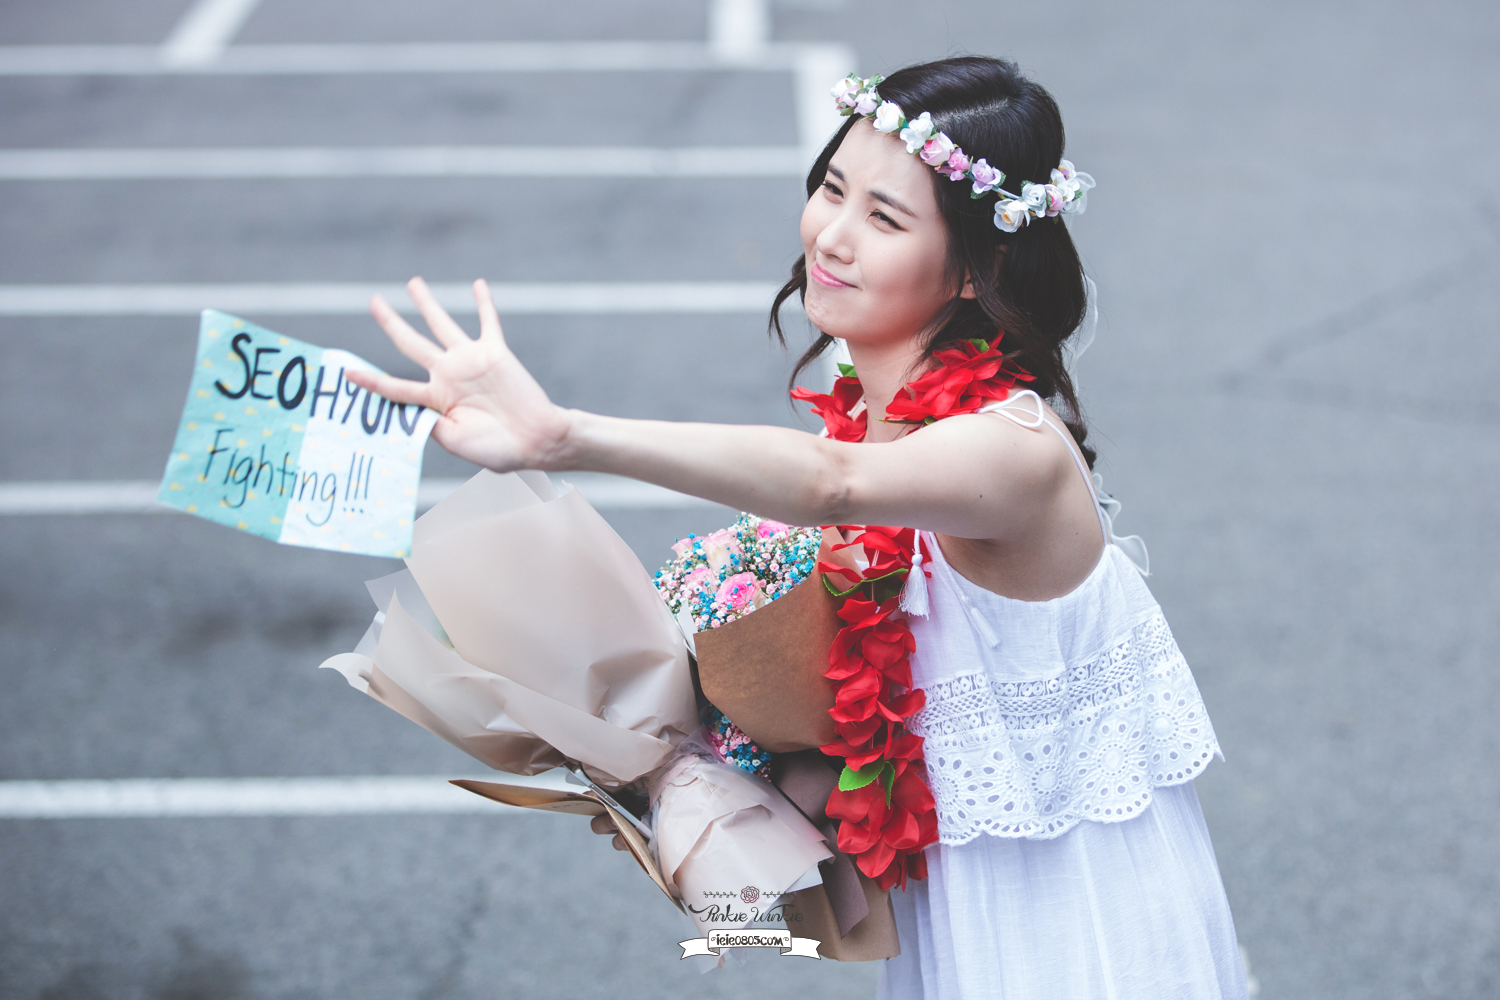 [OTHER][08-12-2015]SeoHyun tham dự vở nhạc kịch mới mang tên "Mamma Mia!" - Page 37 33418433051_bb92346147_o